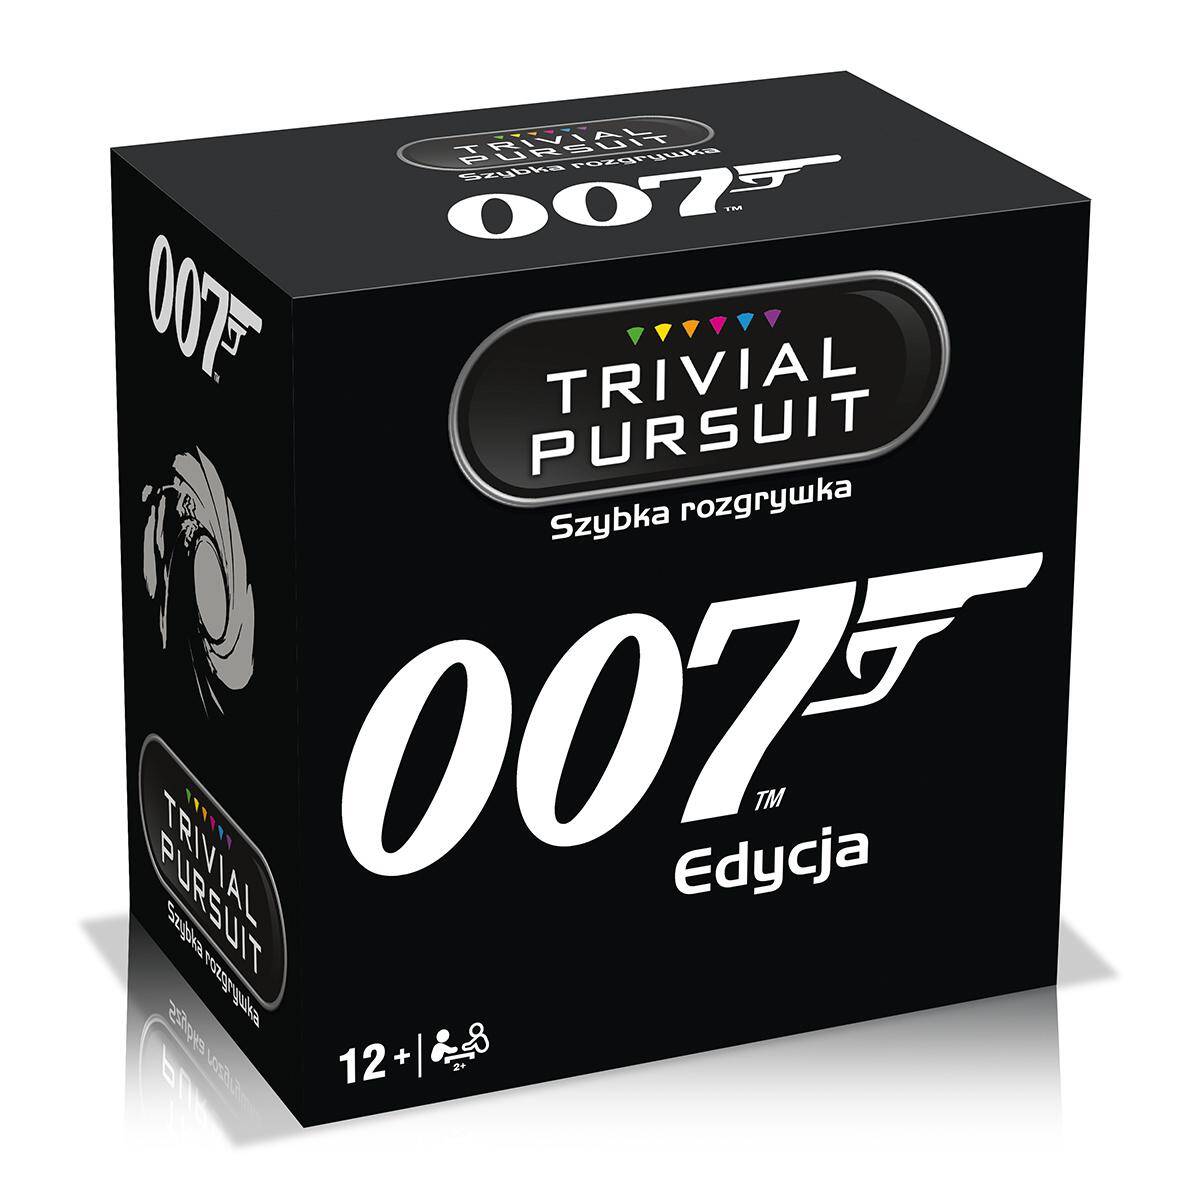 Gra Trivial pursuit James Bond 007